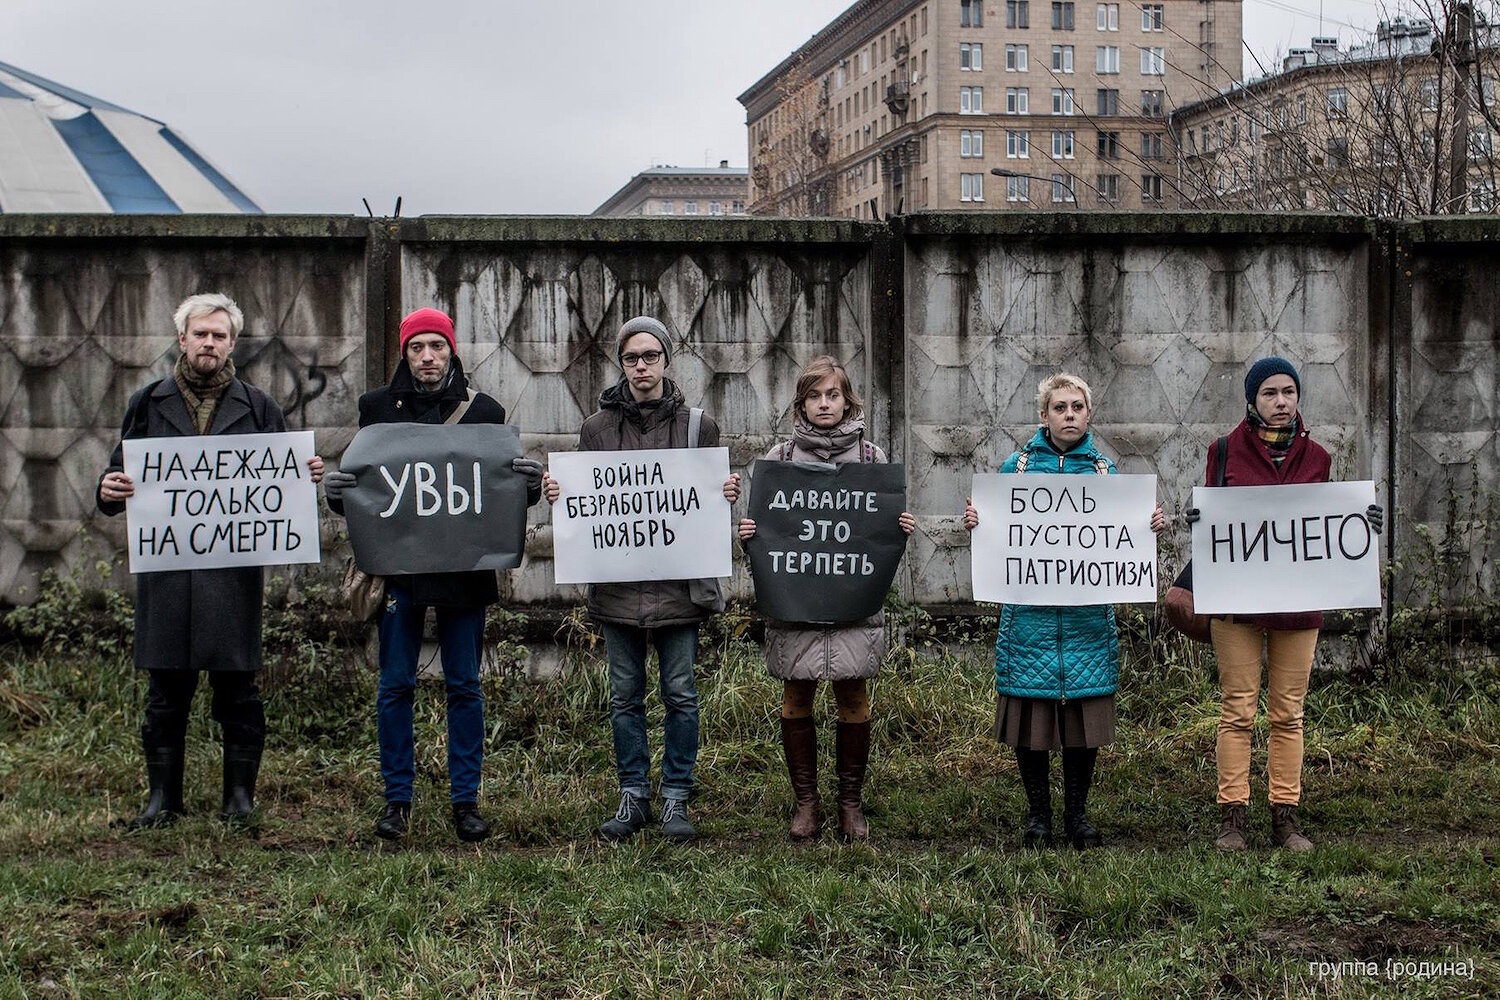 <p>1 ноября. Санкт-Петербург, Россия.&nbsp;Активисты отметили начало ноября депрессивной демонстрацией под лозунгом &laquo;Война &mdash;&nbsp;безработица &mdash;&nbsp;ноябрь&raquo;.</p>